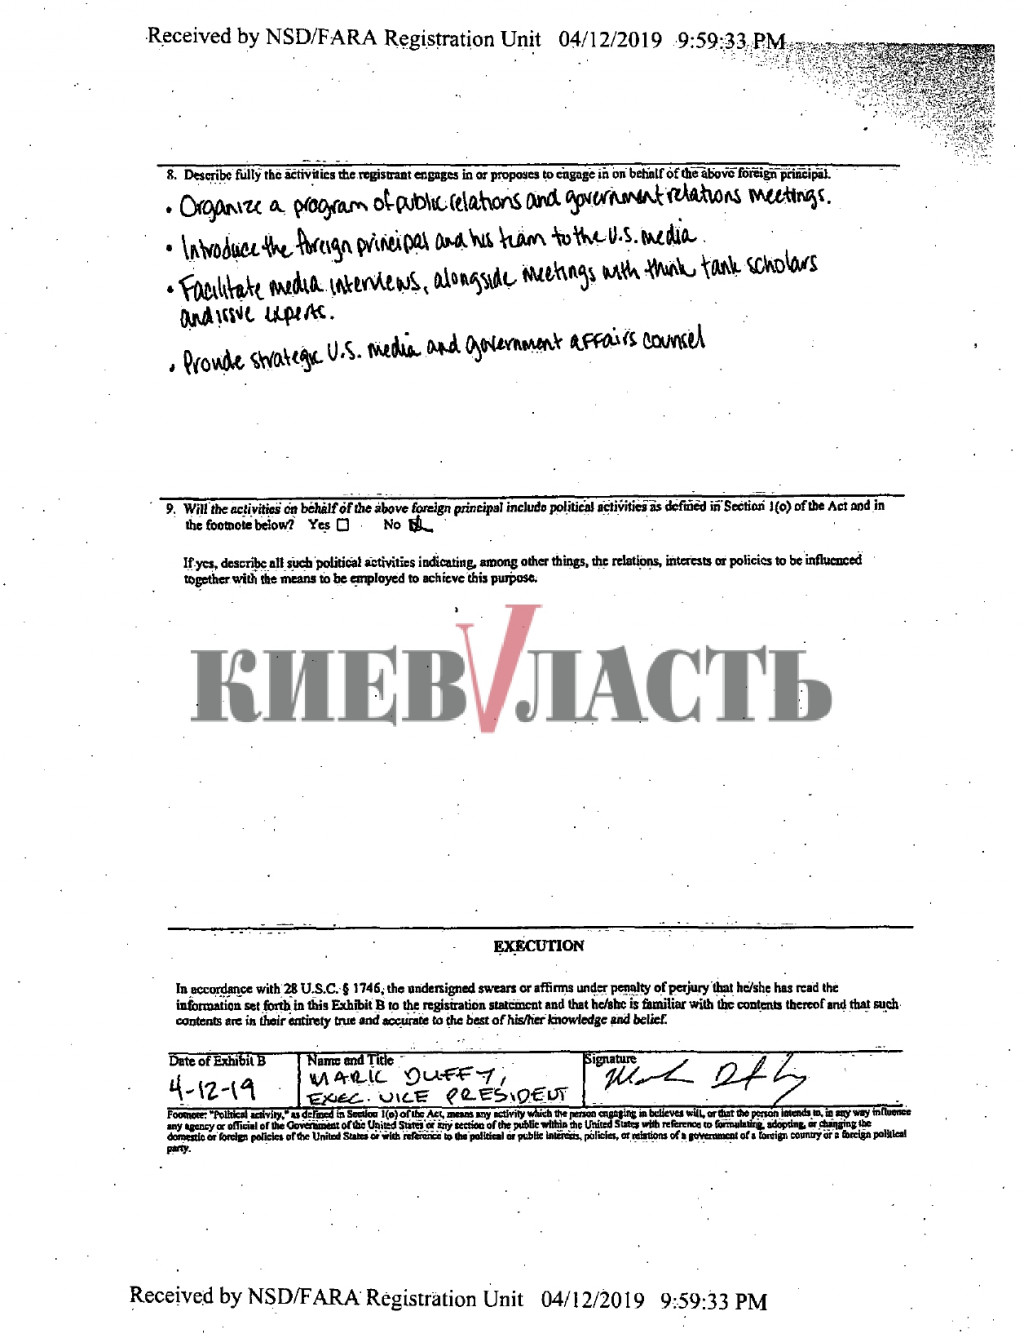 В команде Зеленского пытаются опровергнуть связь с Дубиной и наличие контракта с американскими лоббистами (документ)